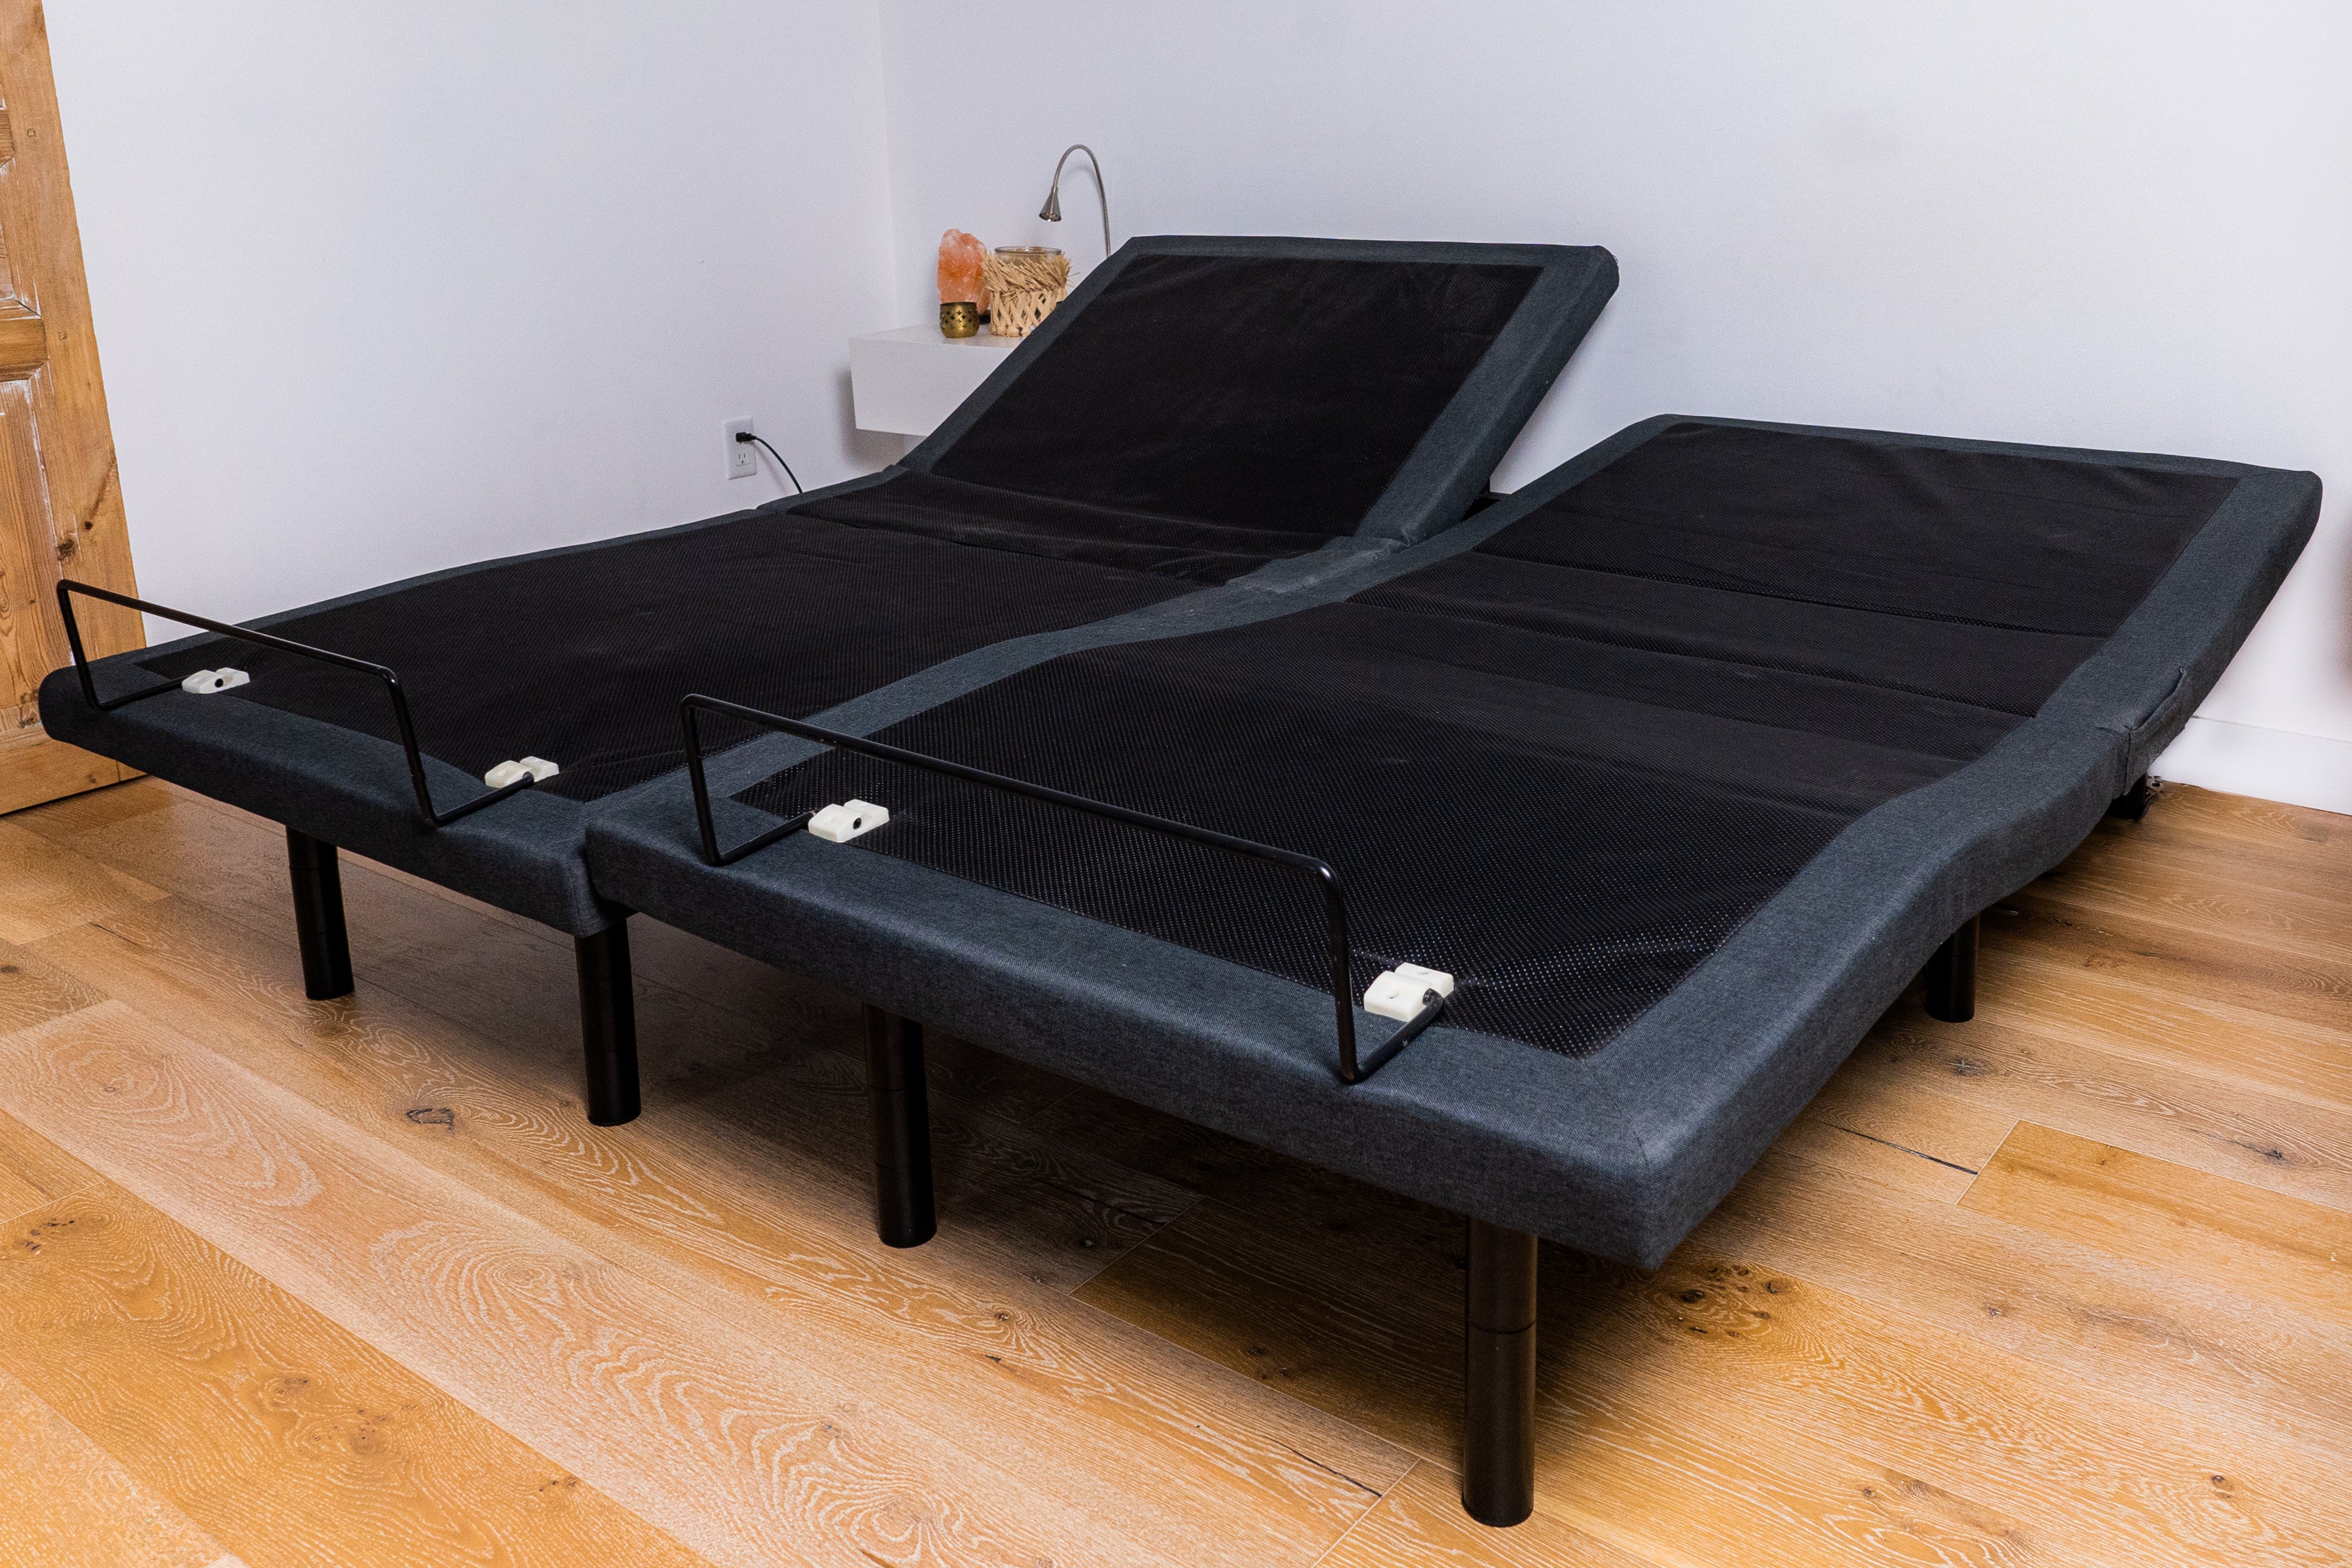 Serta Luxury Split King Adjustable Bed Package